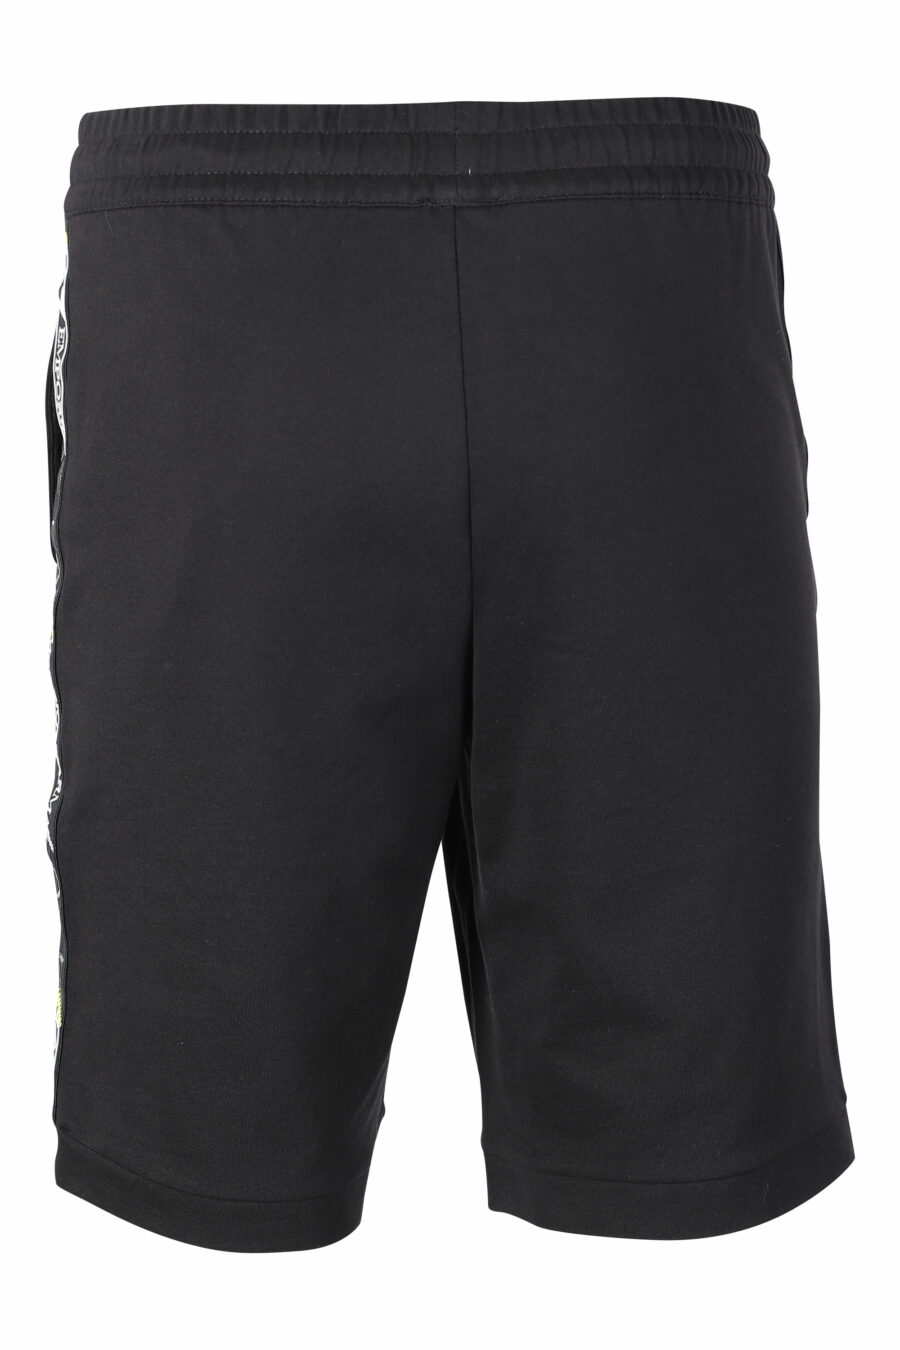 Pantalón de chándal negro corto con logo en cinta laterales - IMG 9508